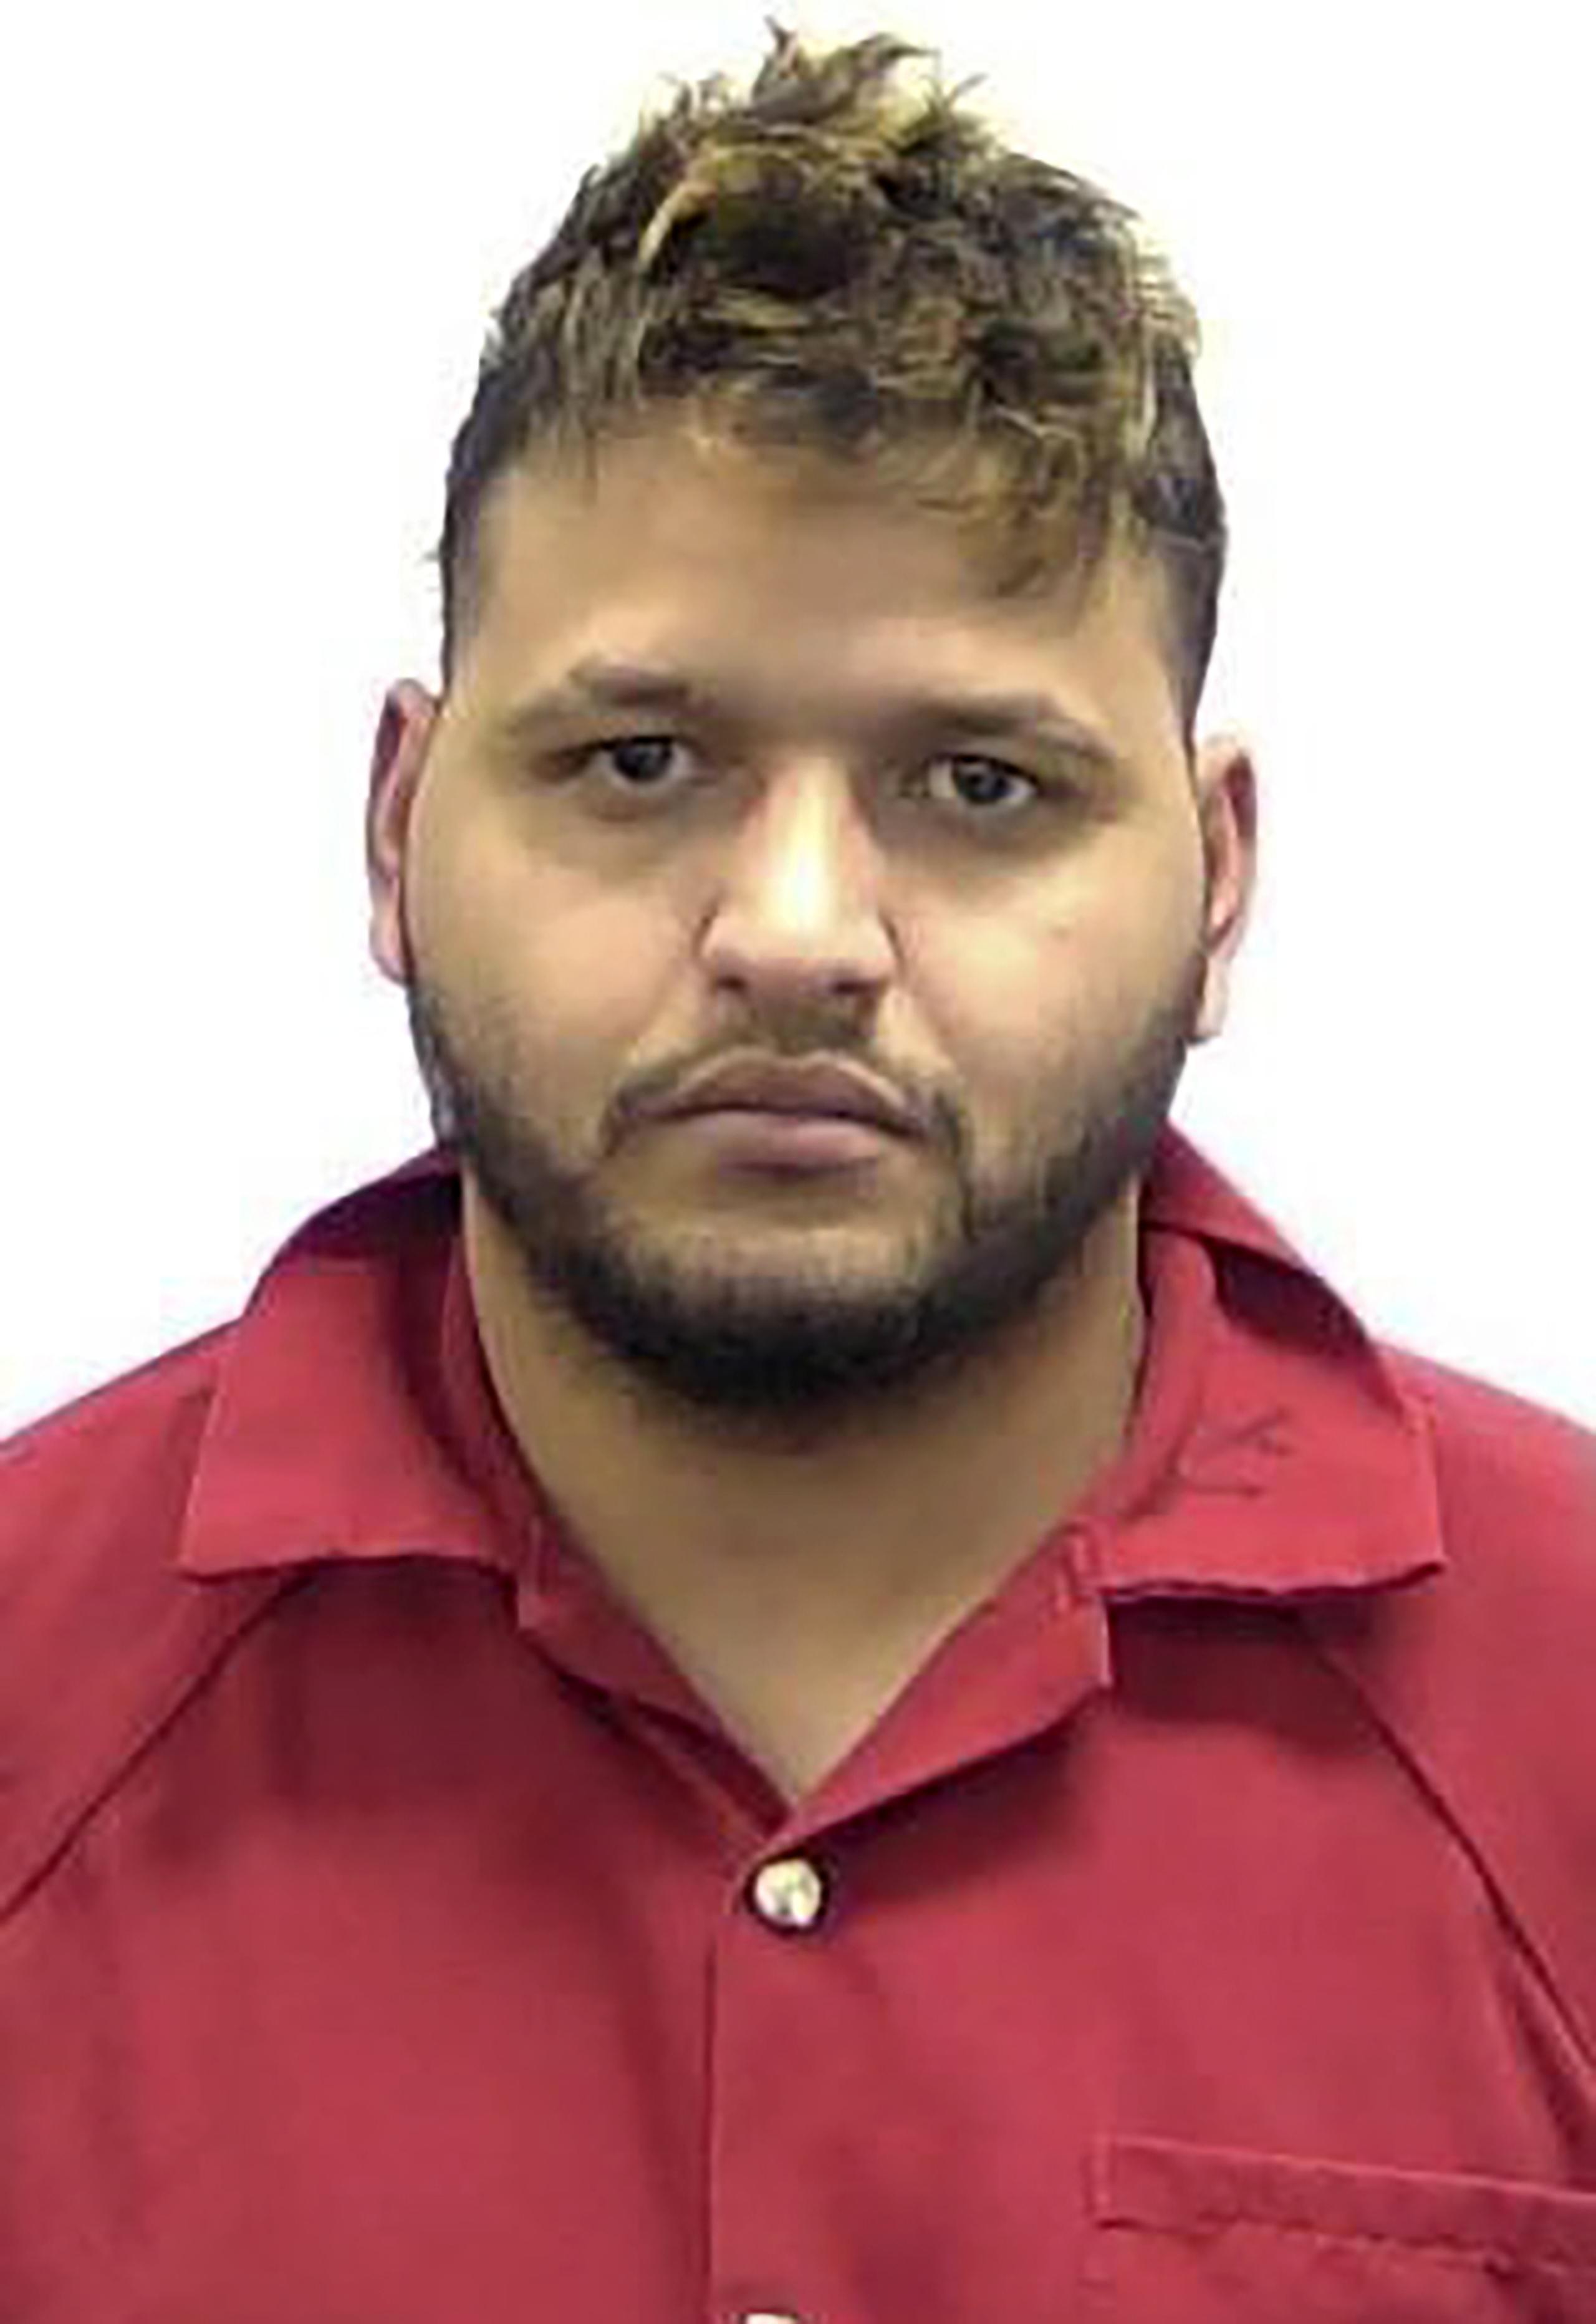 José Antonio Ibarra, de 26 años, fue arrestado y acusado el viernes pasado por el asesinato de la estudiante Laken Hope Riley, de 22 años, mientras corría por el campus de la Universidad de Georgia en la ciudad de Athens el pasado 22 de febrero.